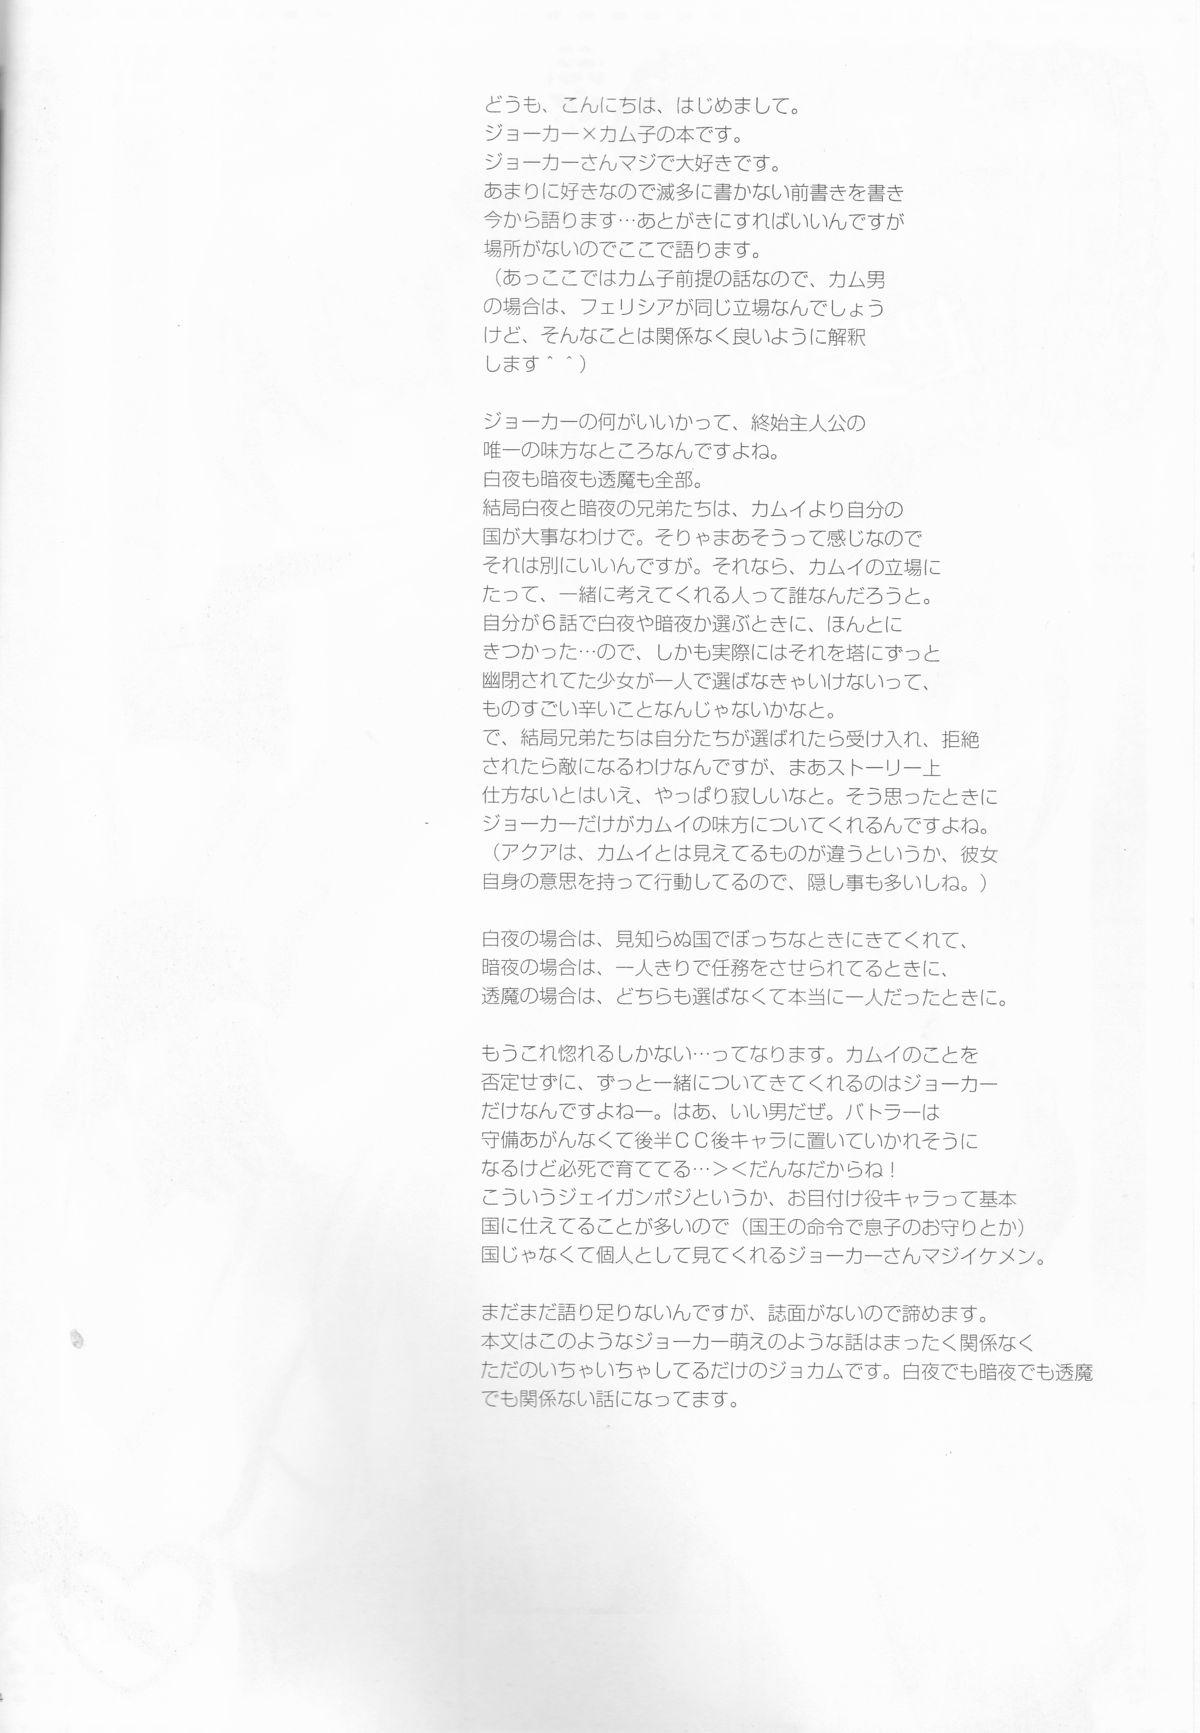 Novinha Ore no Aruji ga Oujo de Koibito de Hikaeme ni Itte Chou Aishiteru! - Fire emblem if Boobies - Page 4